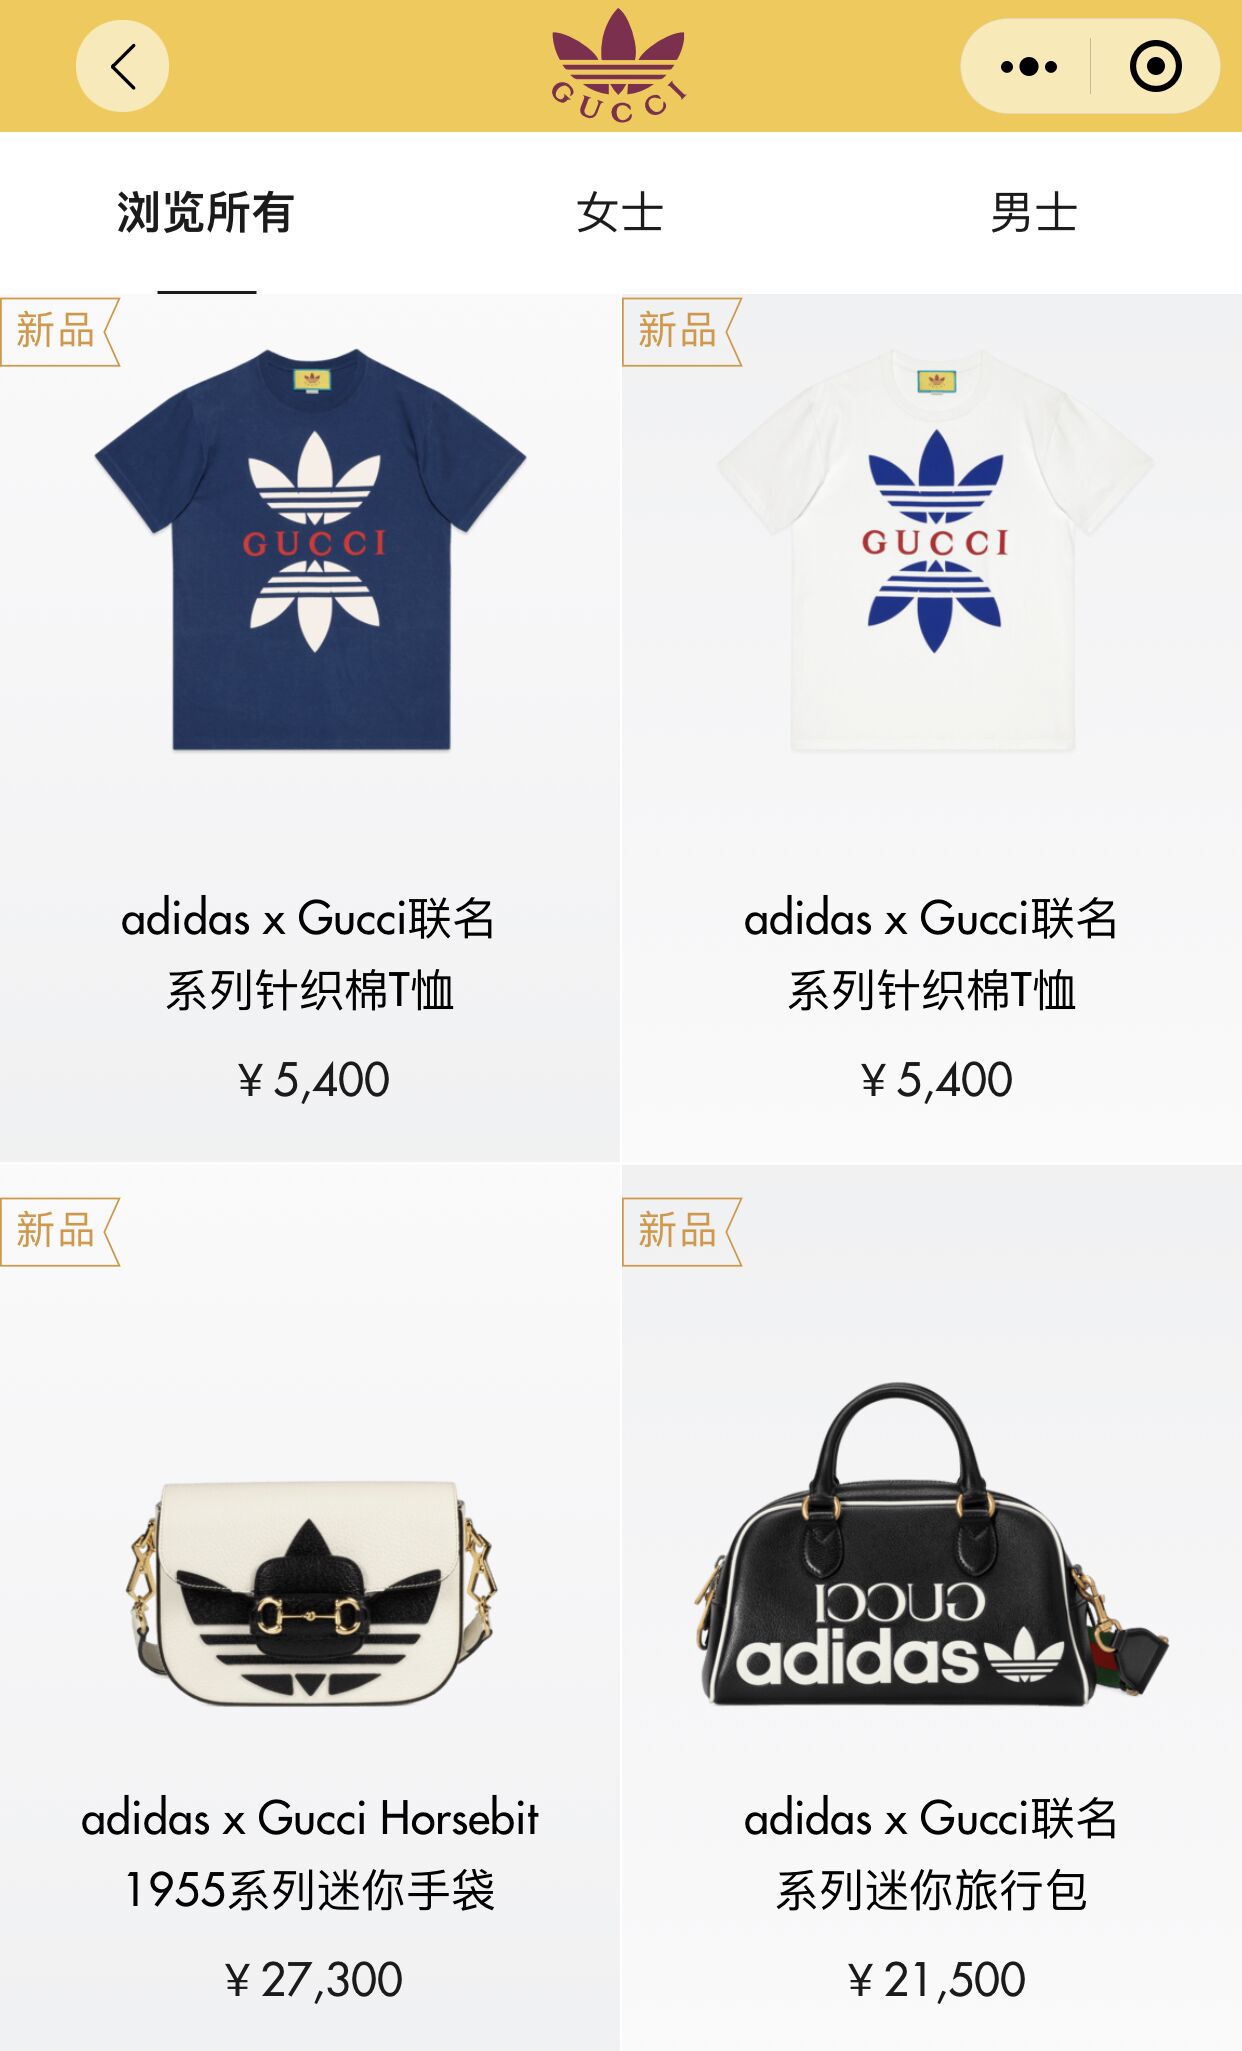 阿迪,Gucci  最贵单品 ¥27300 元！Gucci x adidas 国内小程序上架！